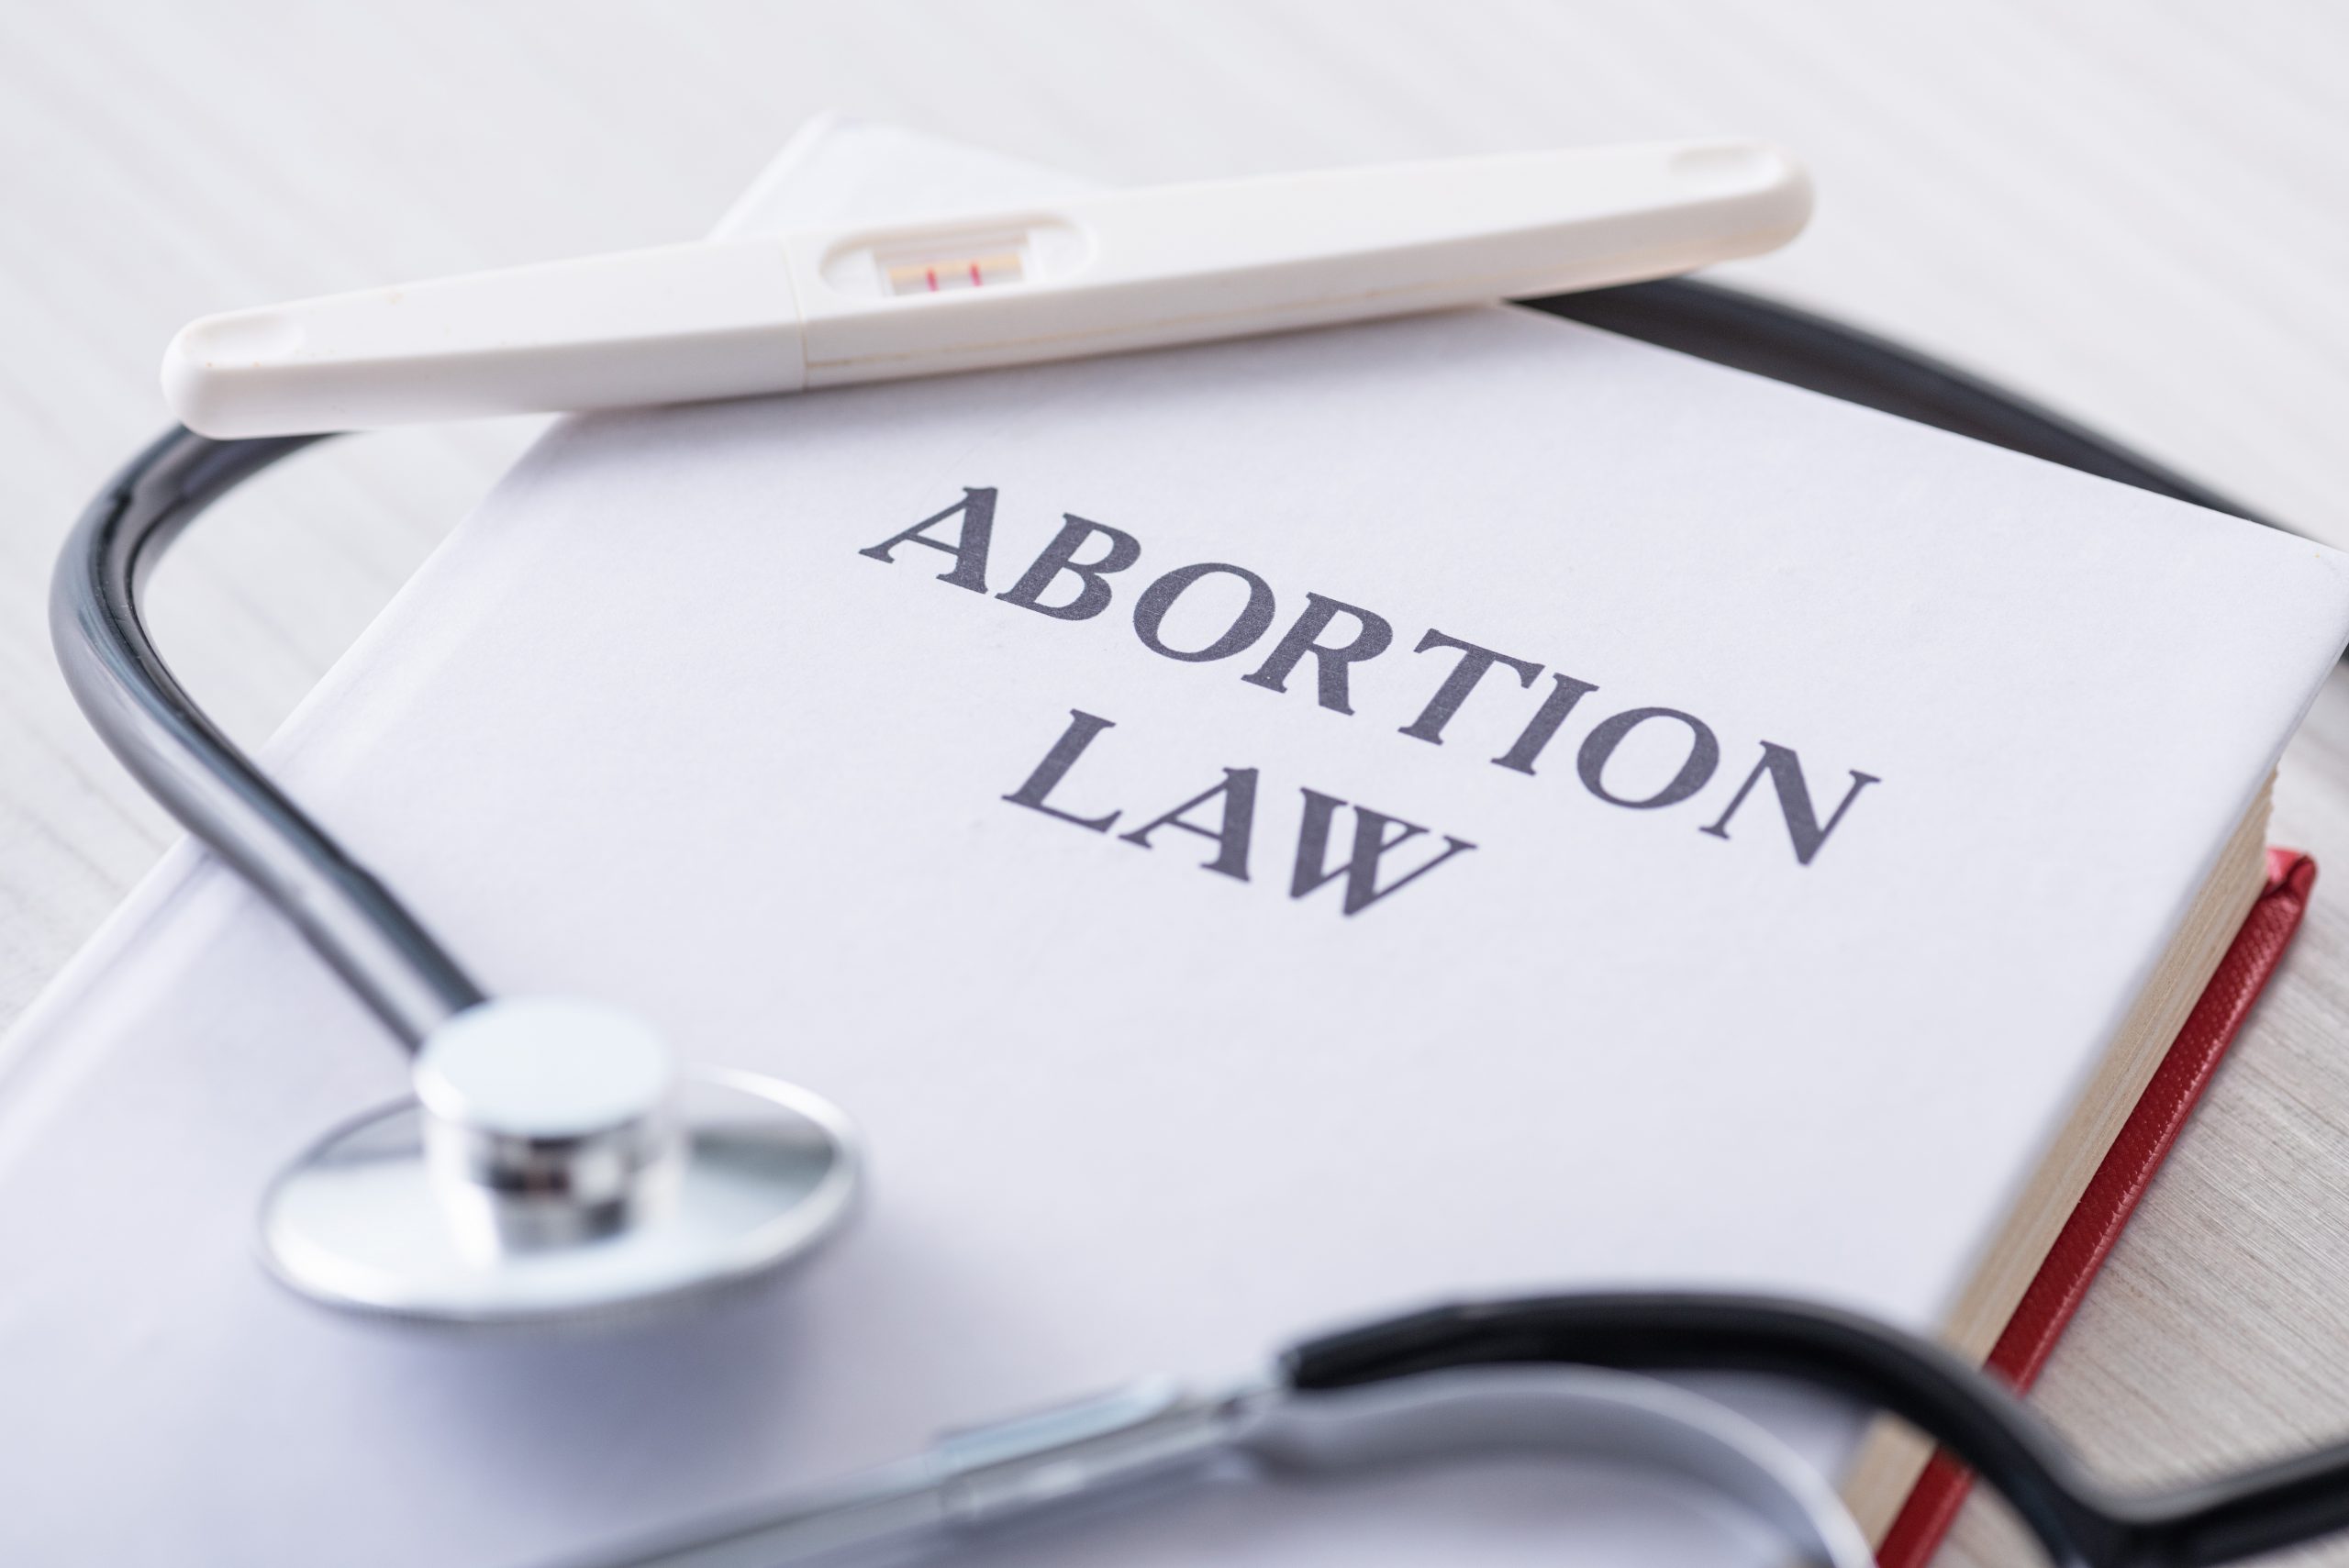 Le dicen “No” a la prohibición del aborto en Kansas